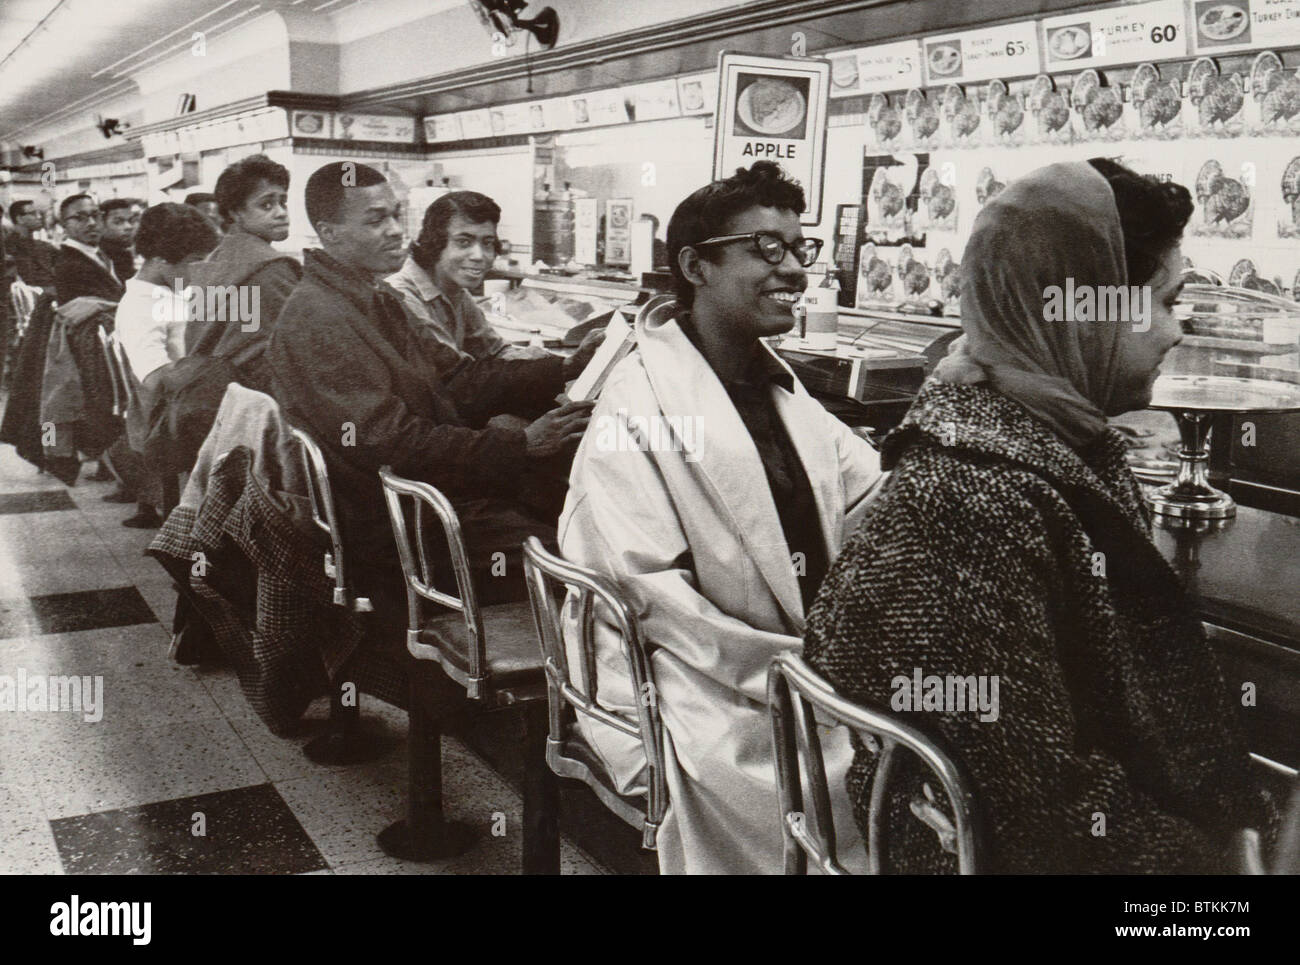 Les Africains américains s'asseoir pour protester contre un comptoir repas seulement aux blancs à Nashville, Tennessee, en 1960. Banque D'Images